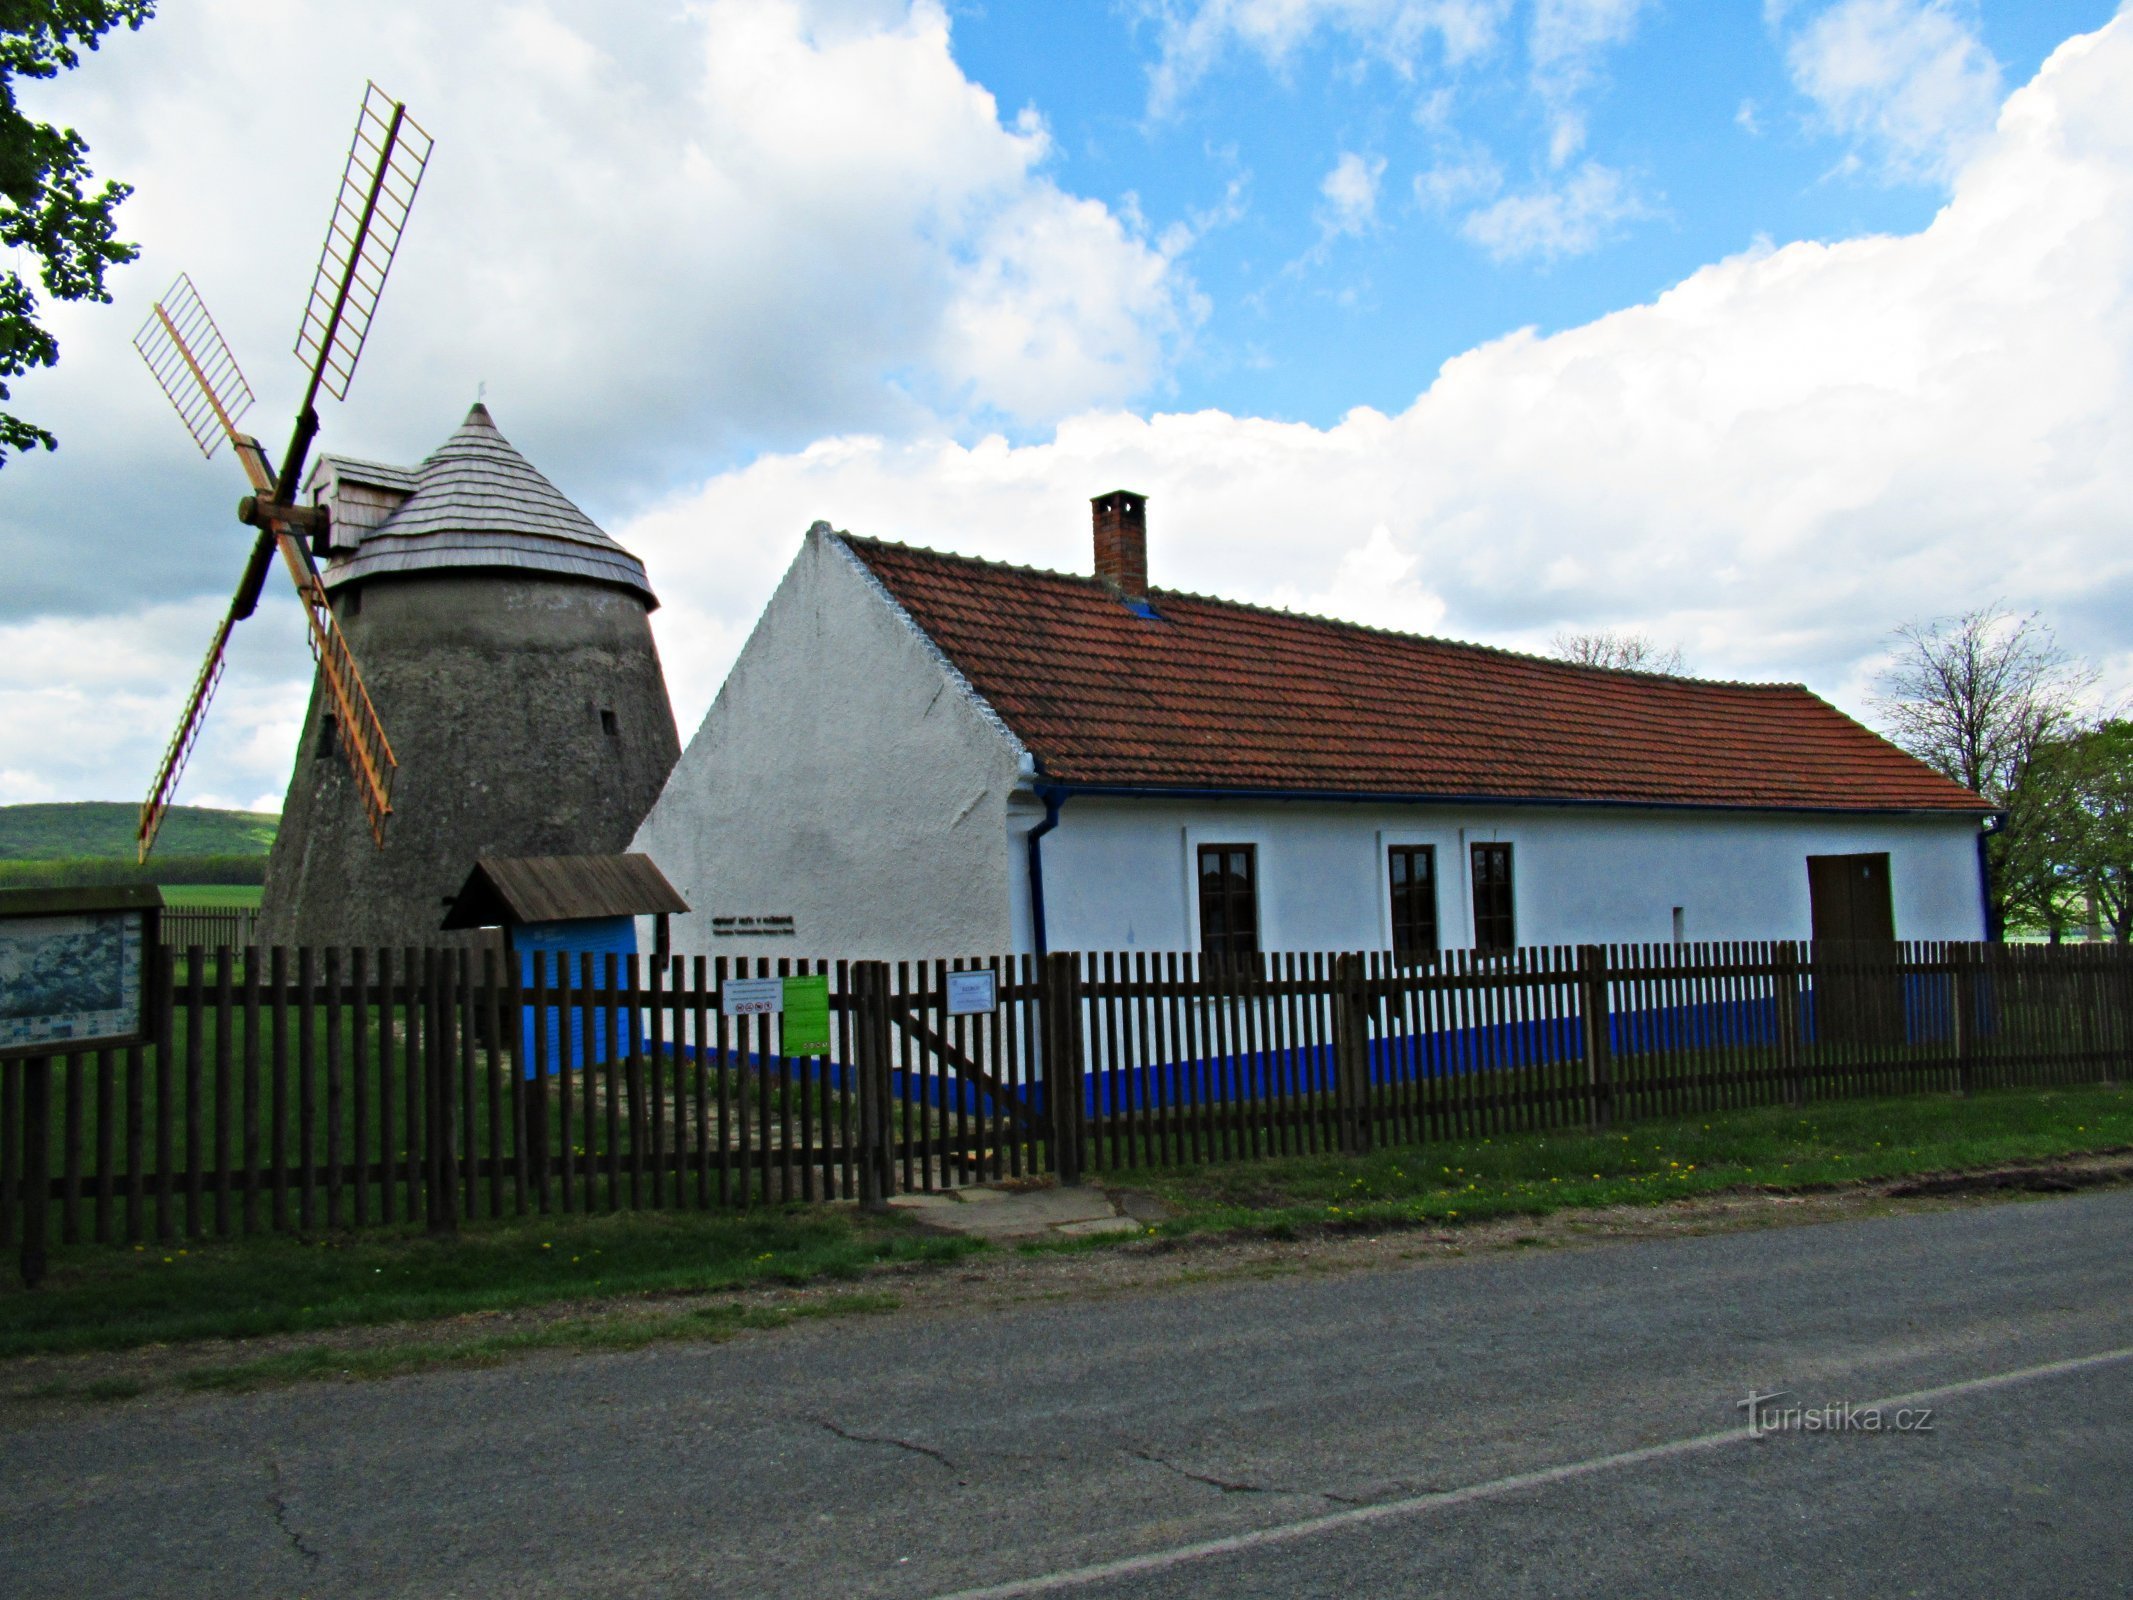 A área do moinho de vento acima da aldeia de Kuželov em Slovácko